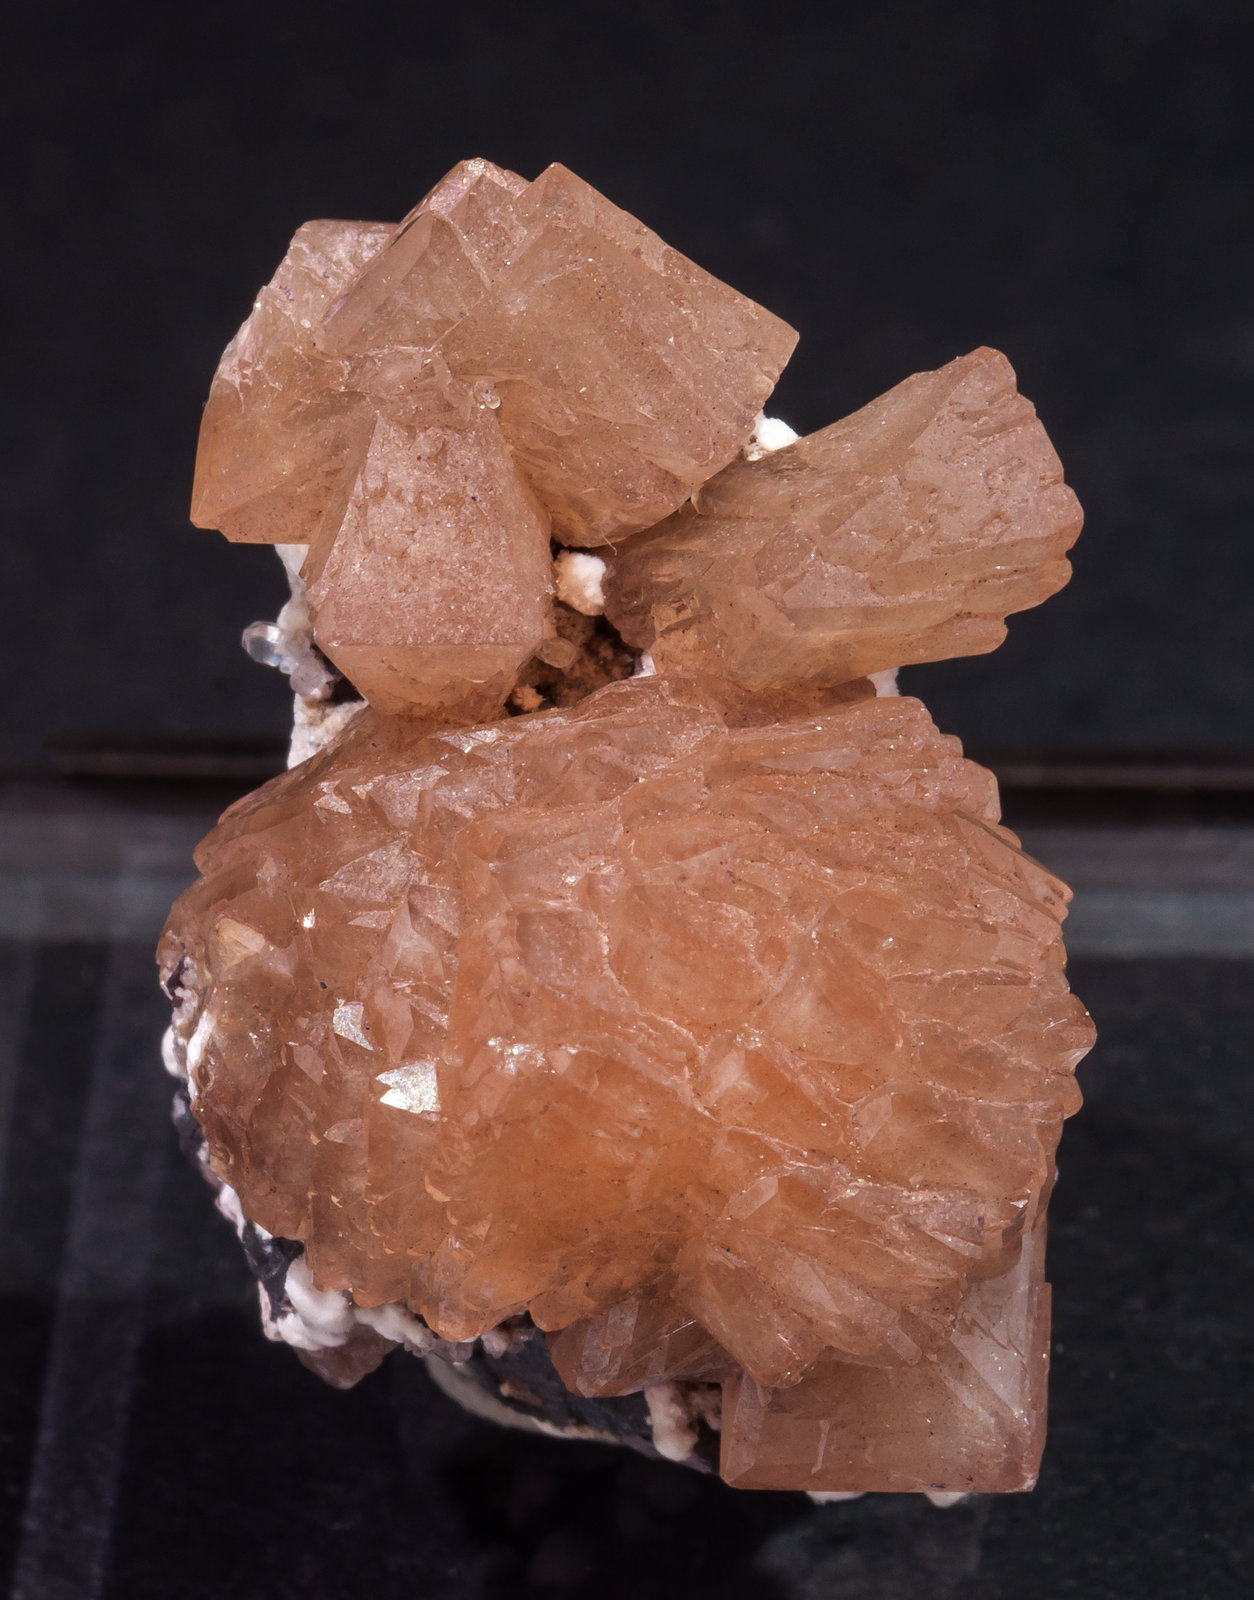 specimens/s_imagesAL5/Olmiite-MG96AL5s.jpg